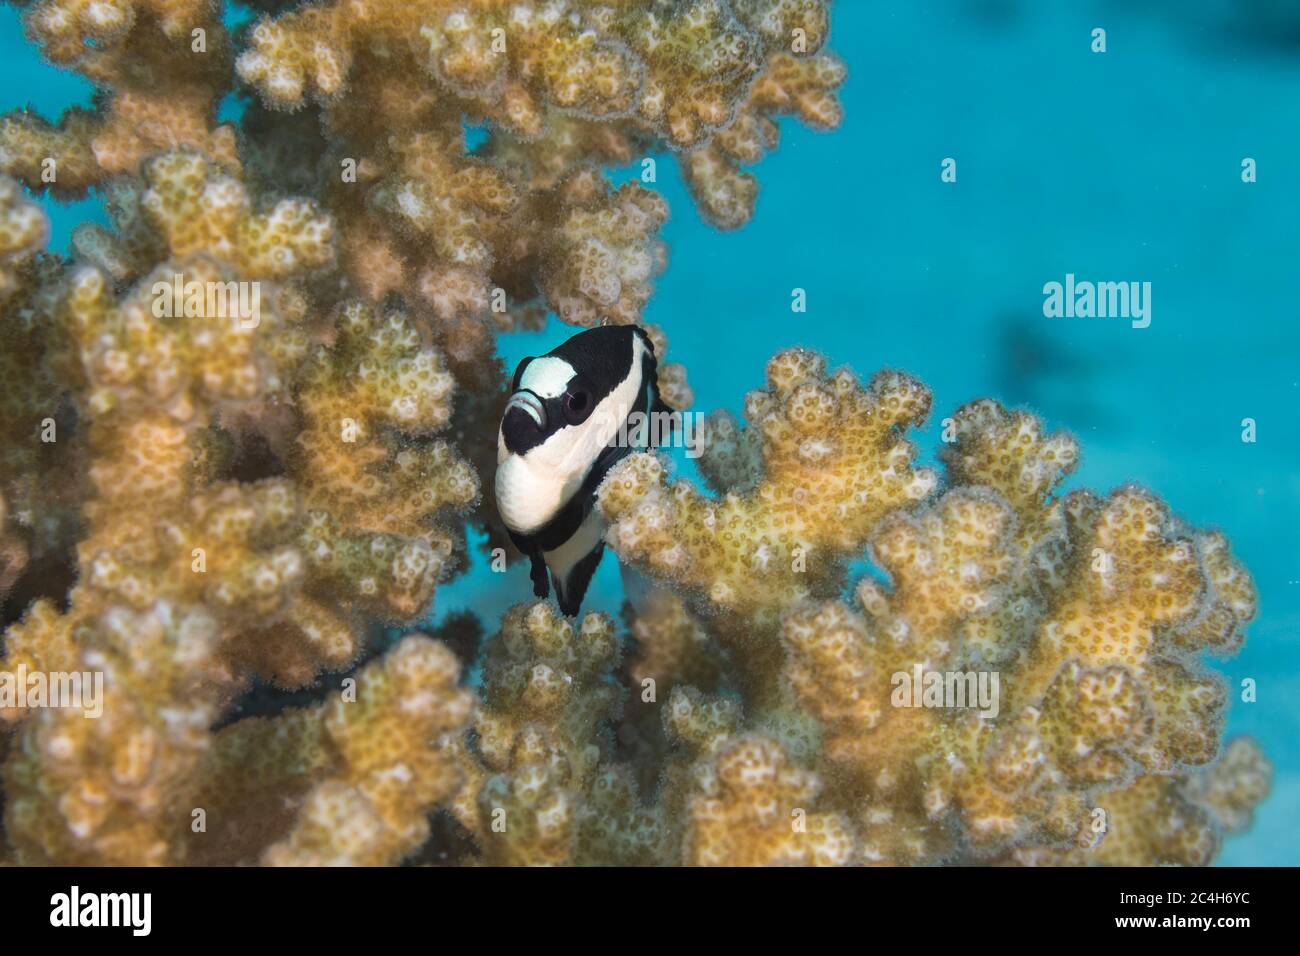 Cuatro rayas adamegoístas (Dascyllus melanurus), pequeños peces de rayas blancas y negras escondidos en el coral Foto de stock